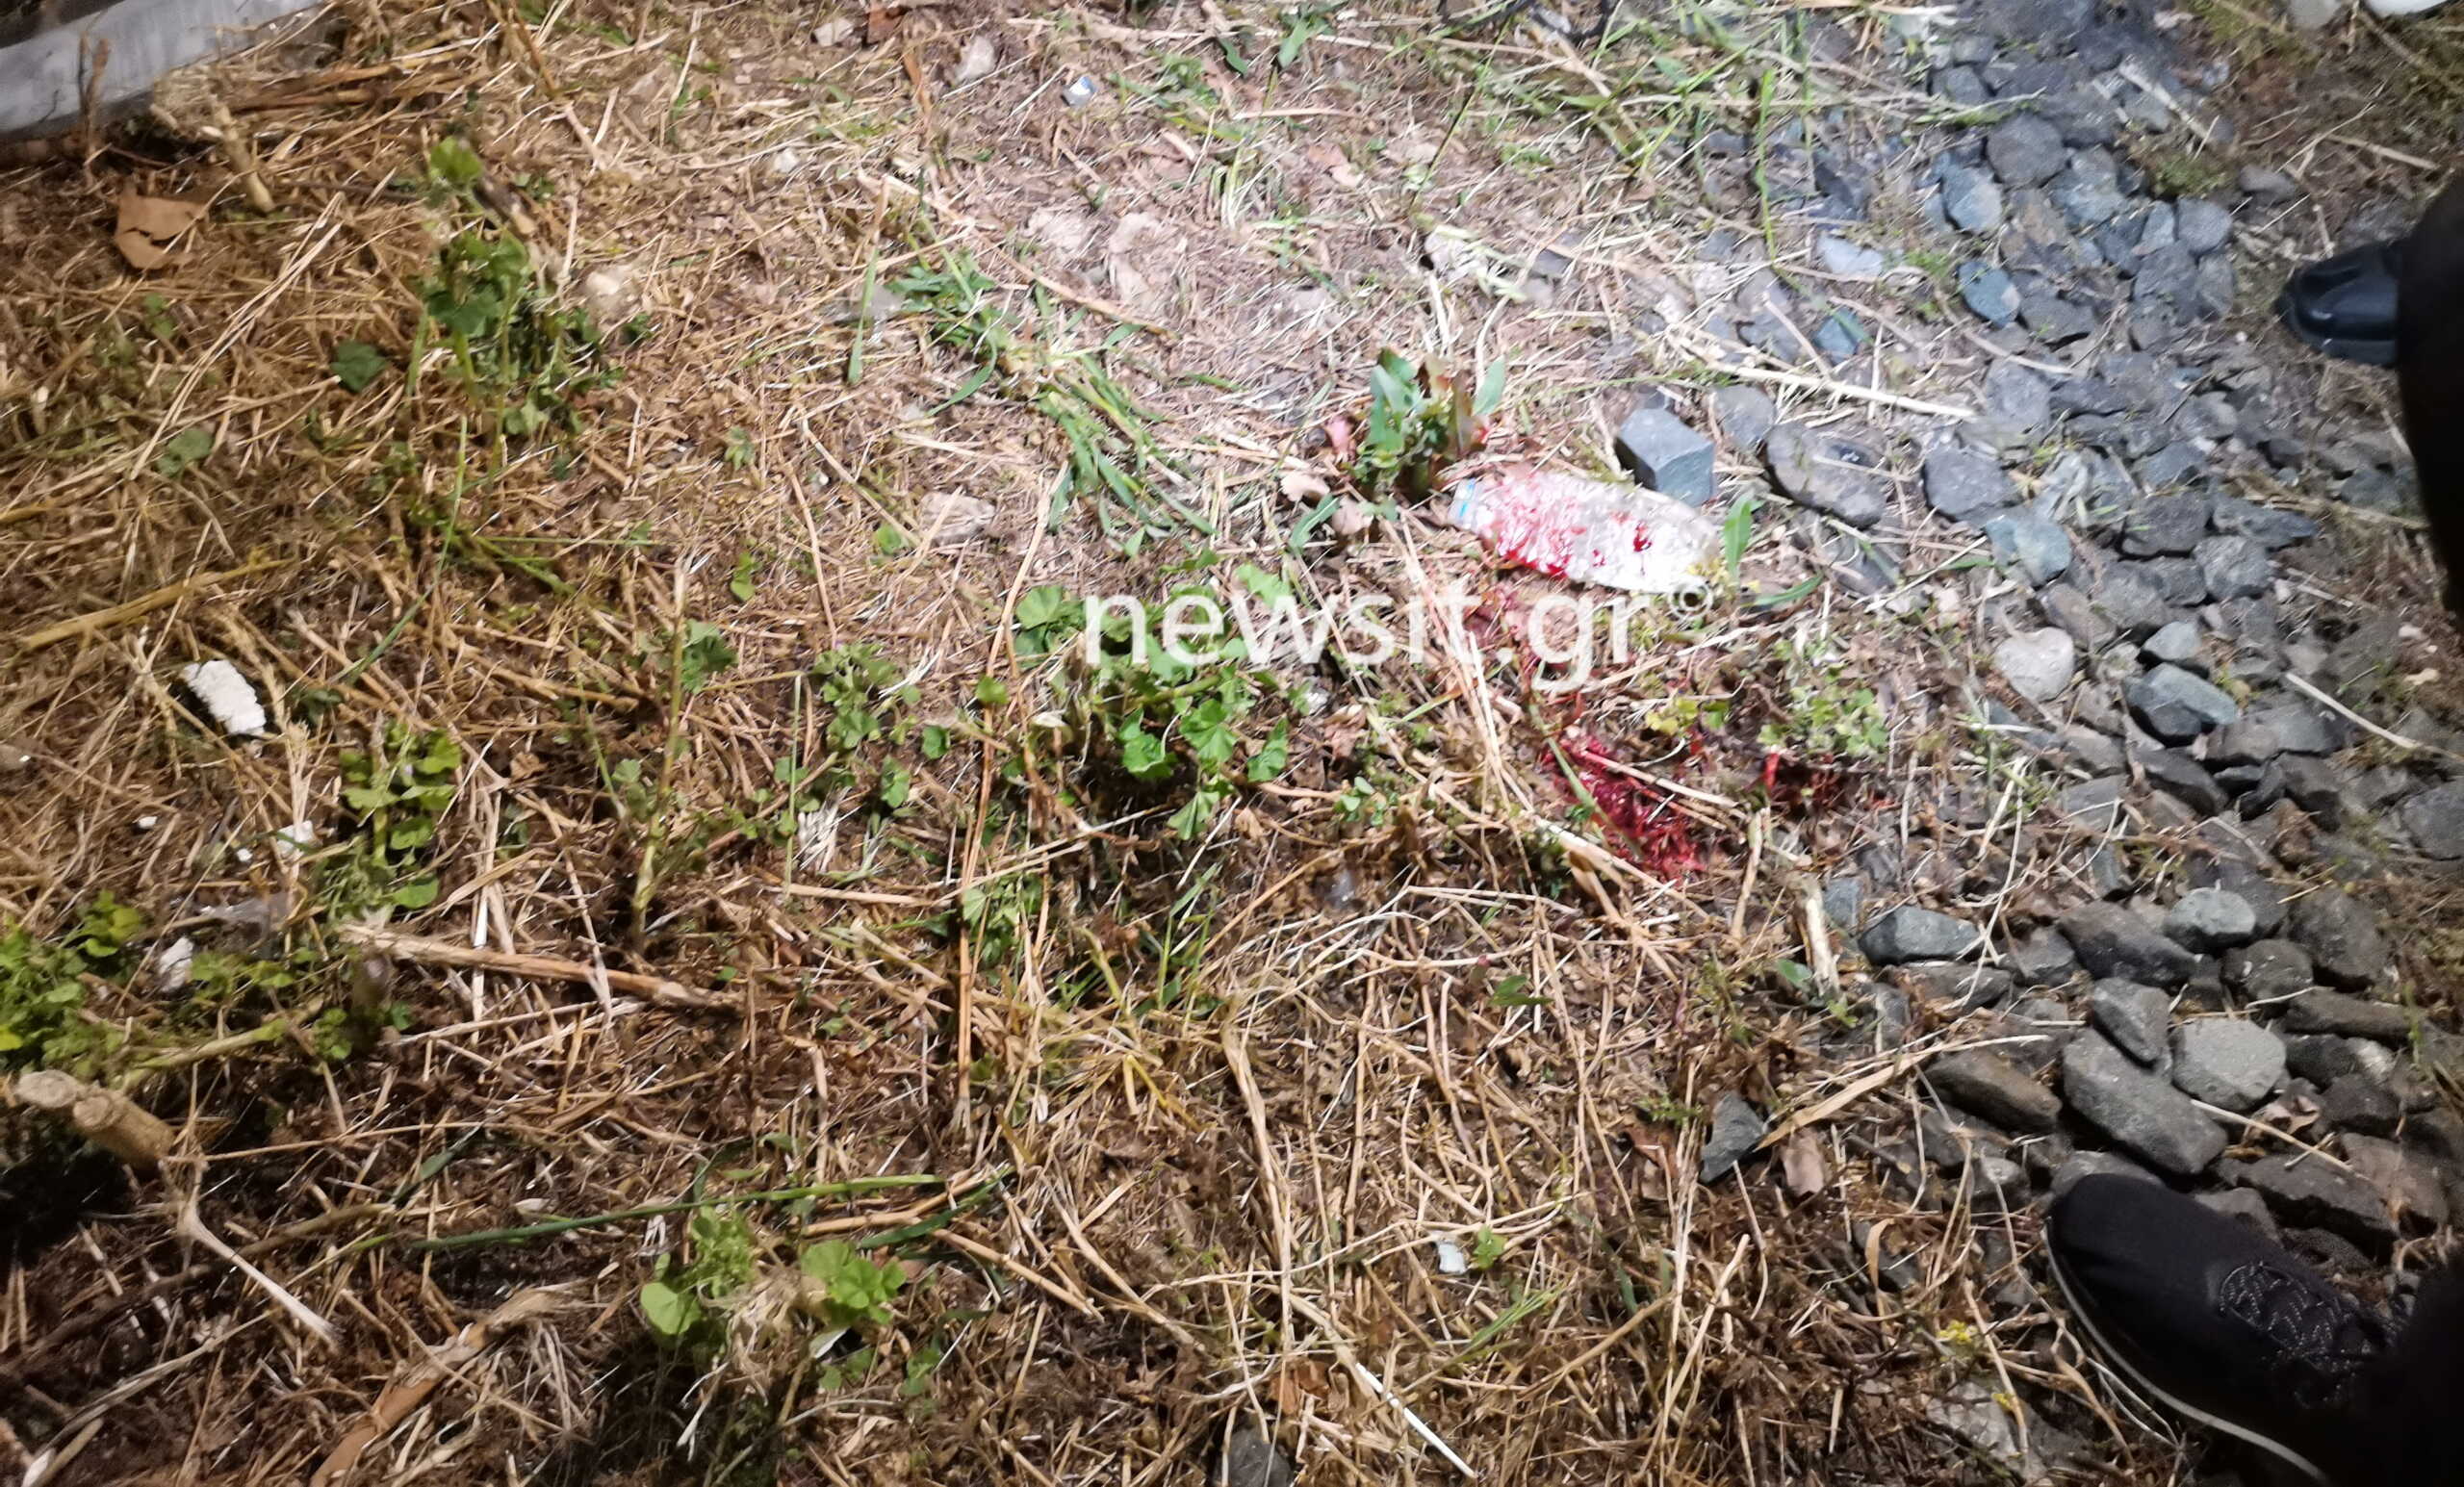 Προαστιακός: 16χρονος παρασύρθηκε από συρμό κοντά στο σταθμό «Ταύρος»